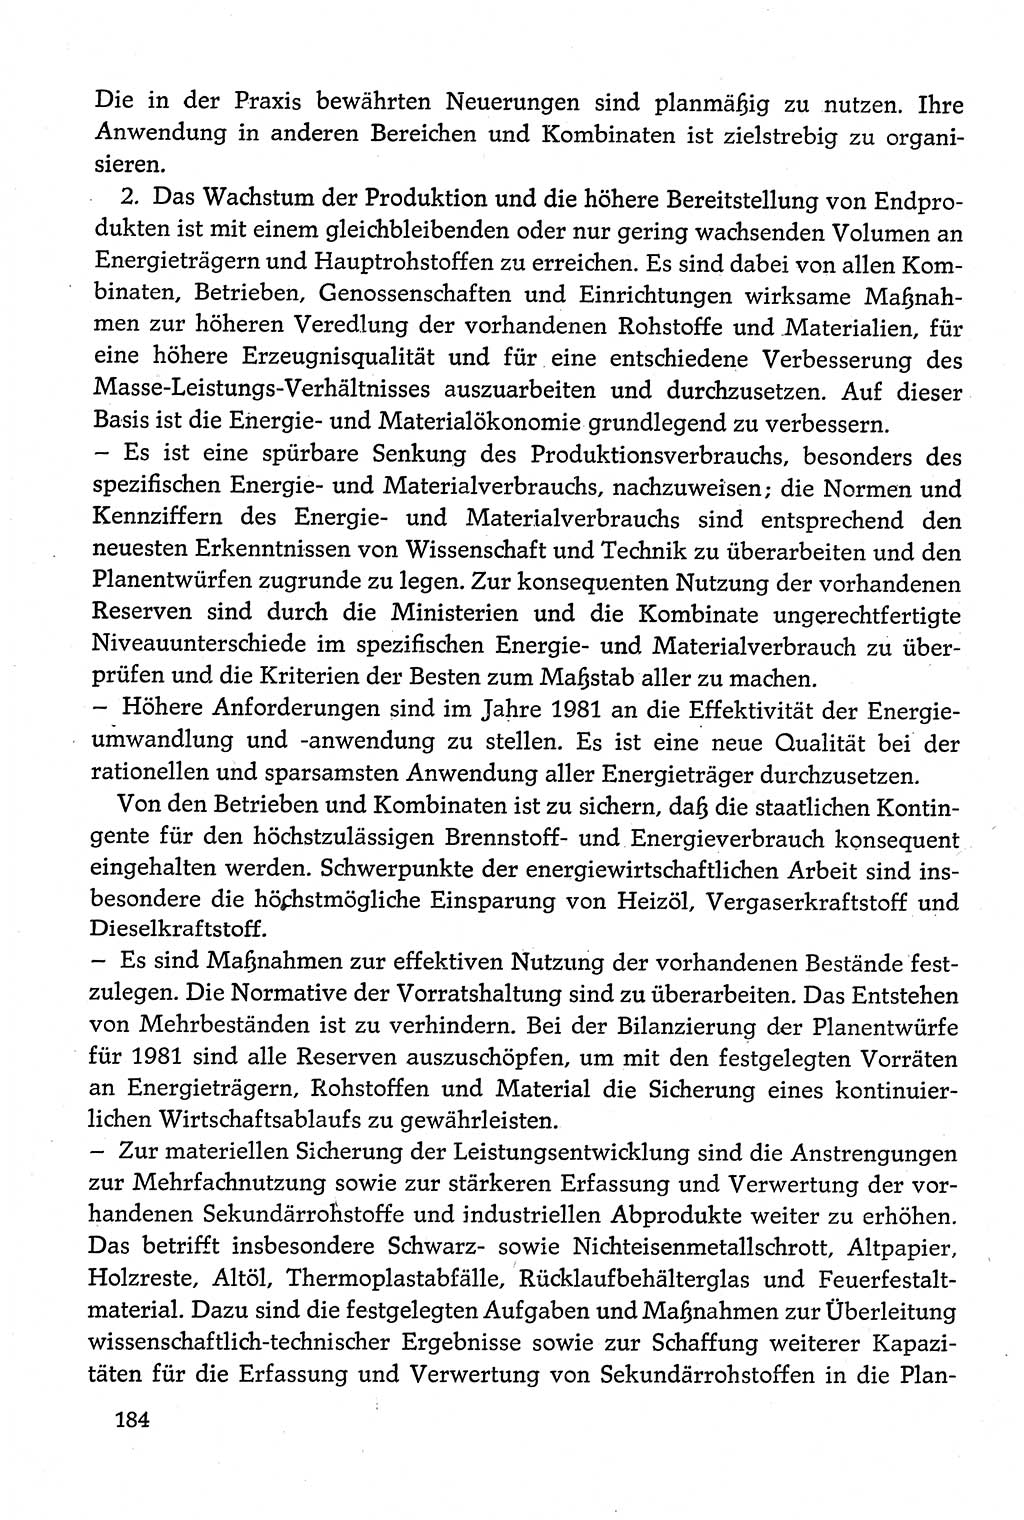 Dokumente der Sozialistischen Einheitspartei Deutschlands (SED) [Deutsche Demokratische Republik (DDR)] 1980-1981, Seite 184 (Dok. SED DDR 1980-1981, S. 184)